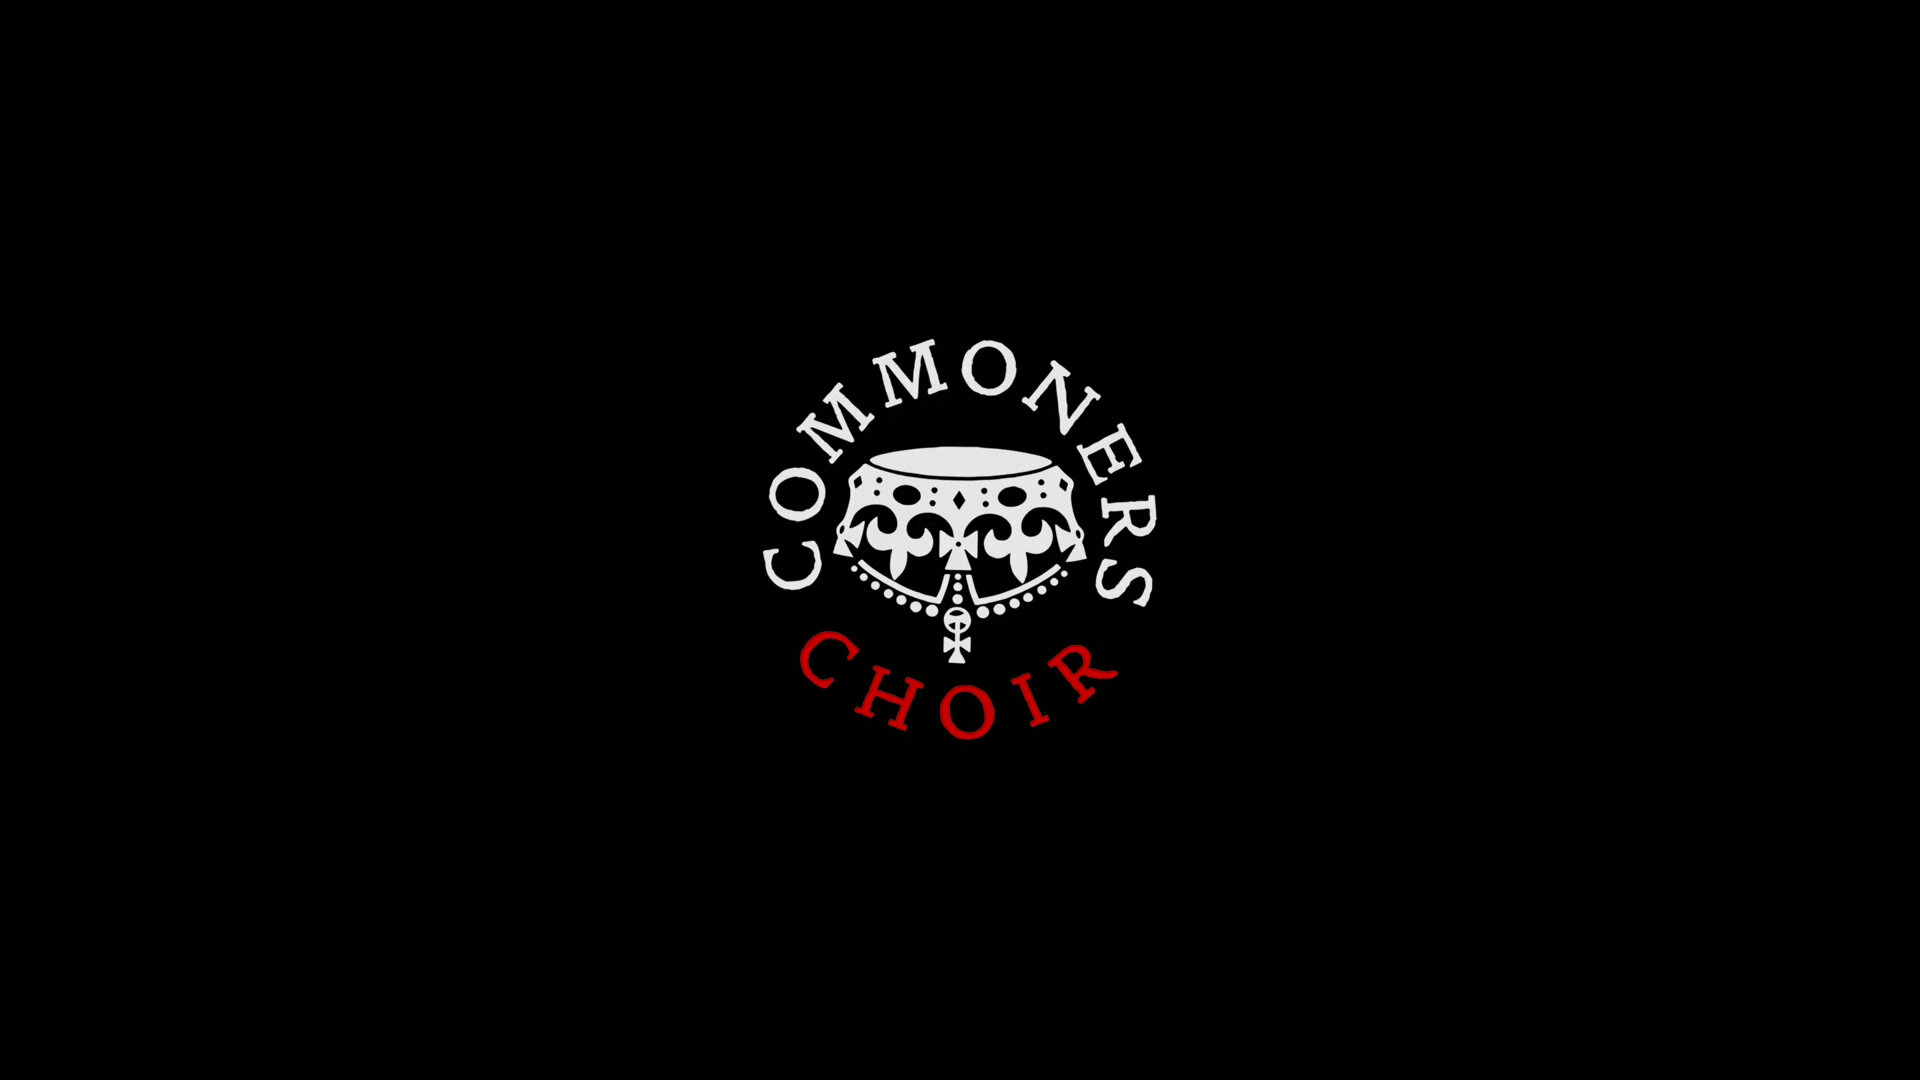 Commoners Choir 16x9 3.jpg